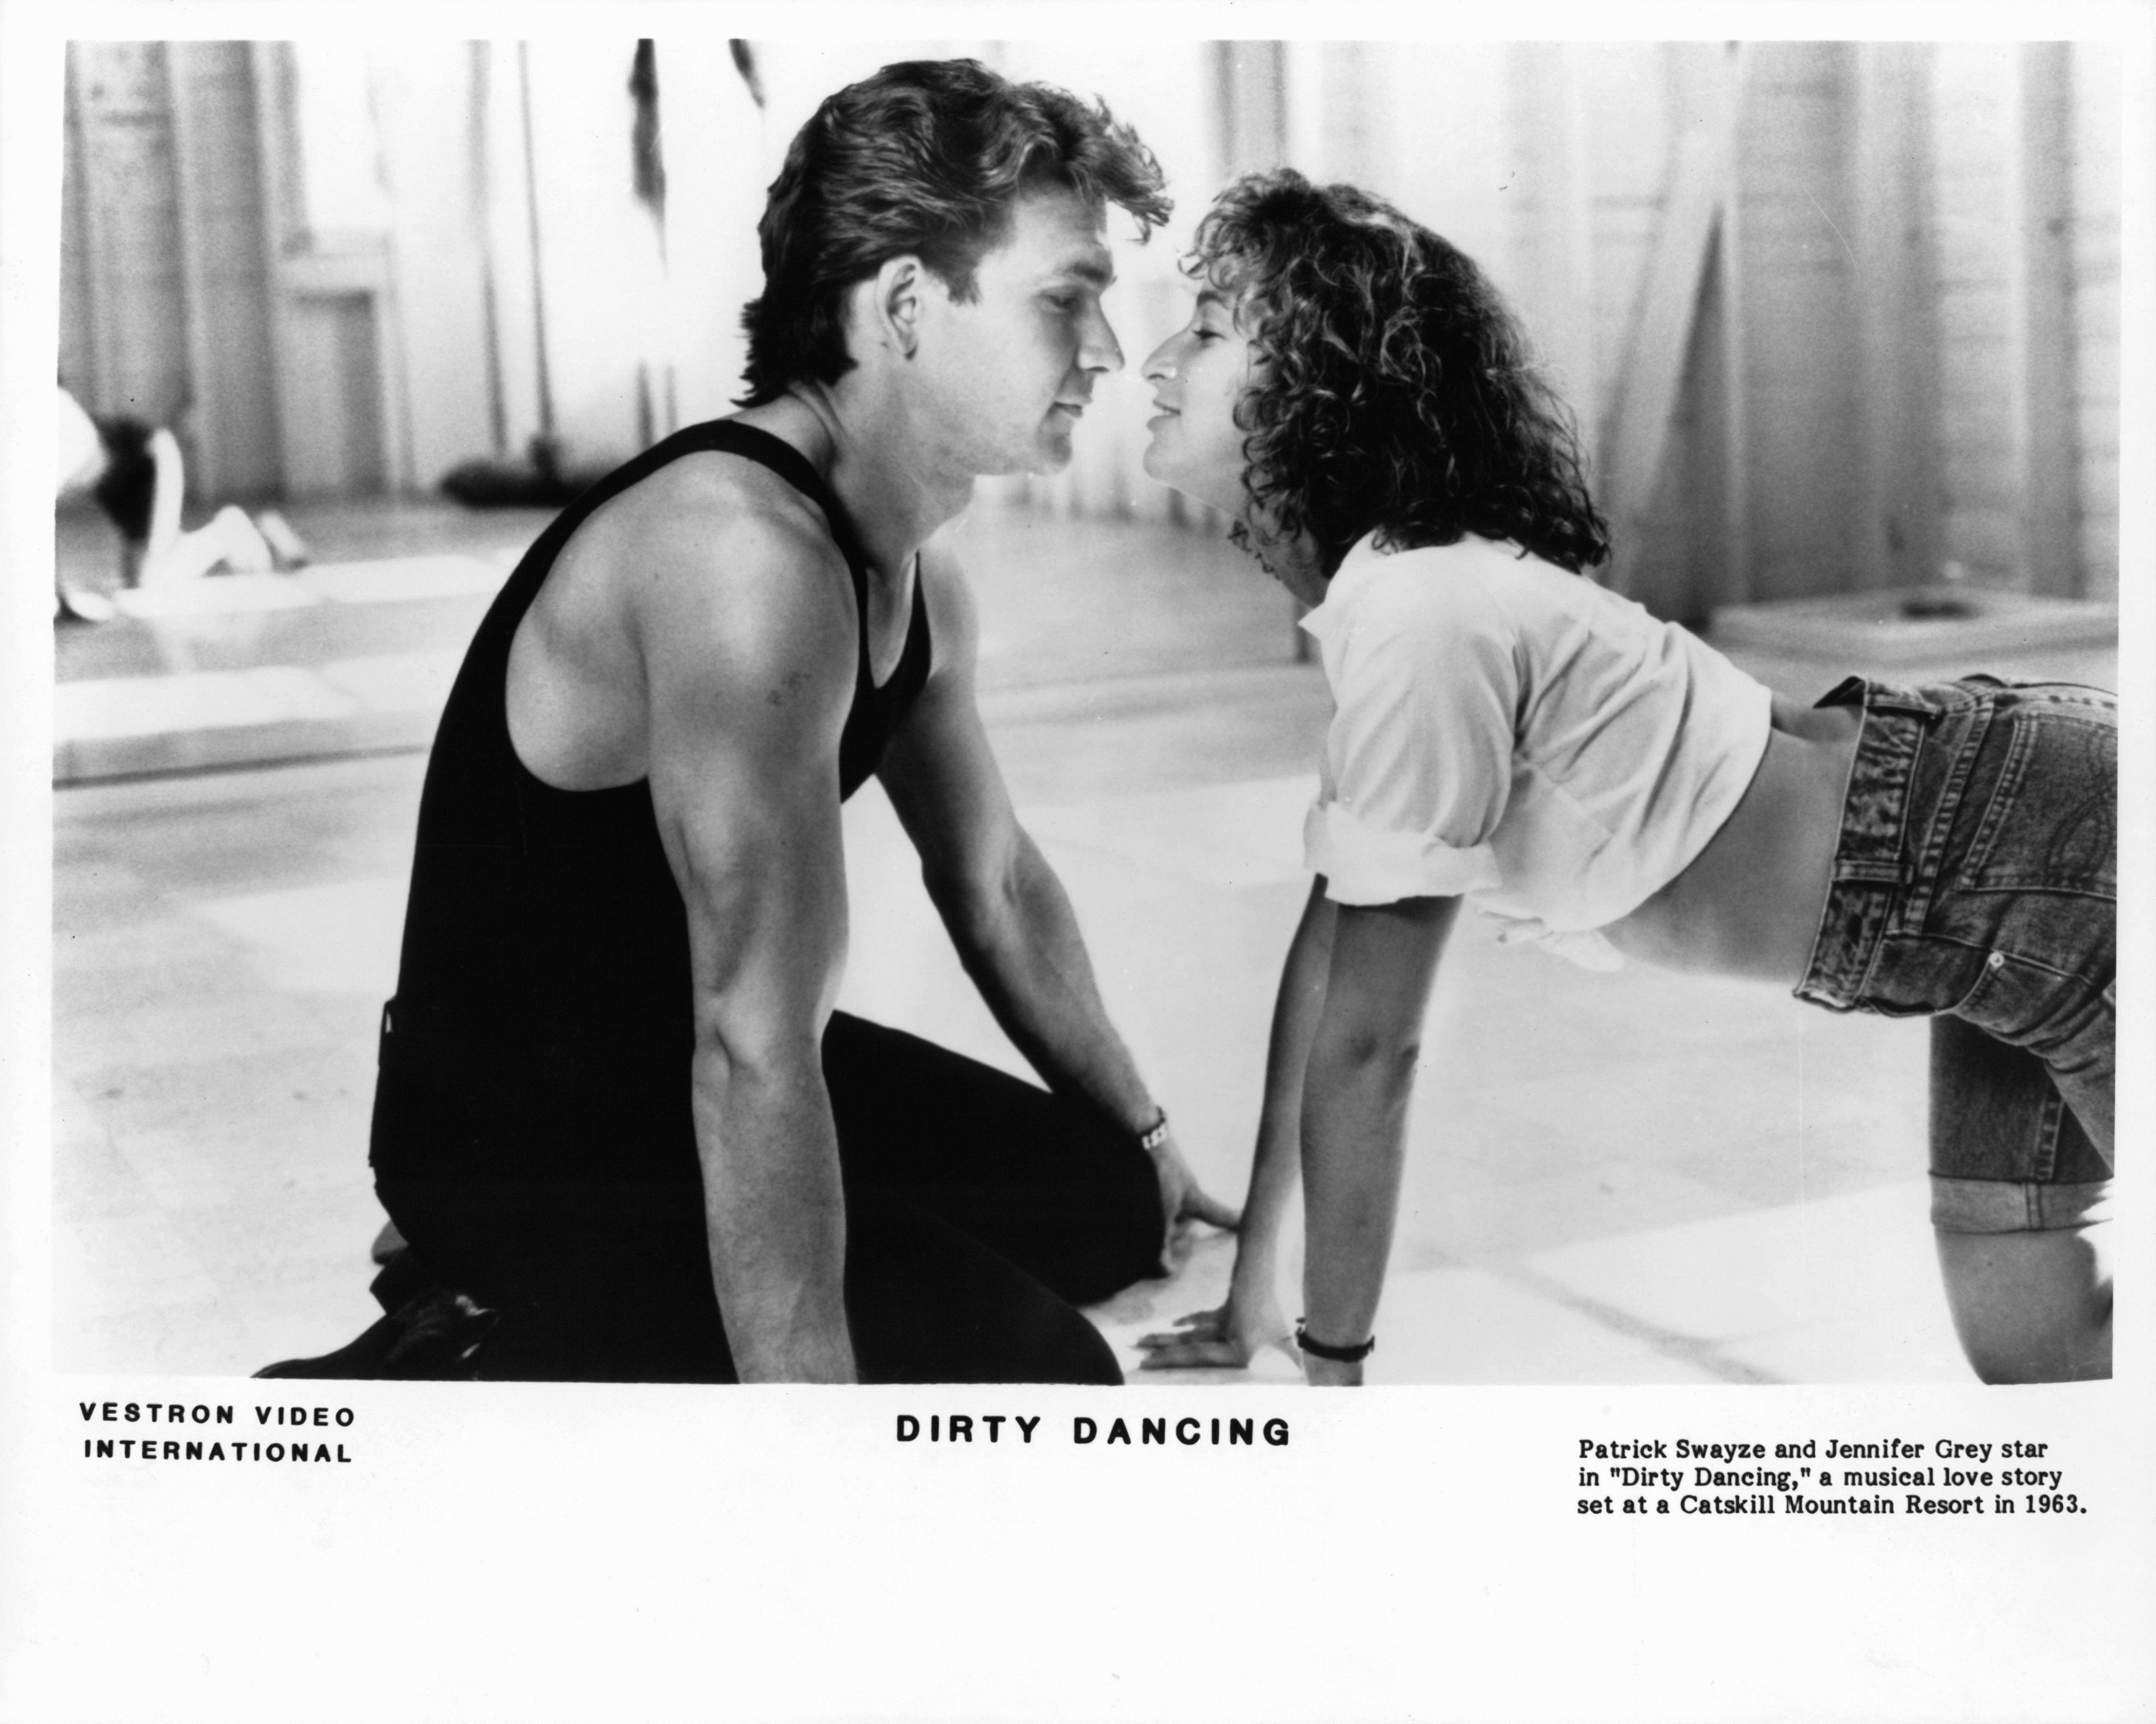 Patrick Swayze und Jennifer Grey in einer Szene aus dem Film 'Dirty Dancing', 1987 | Quelle: Getty Images